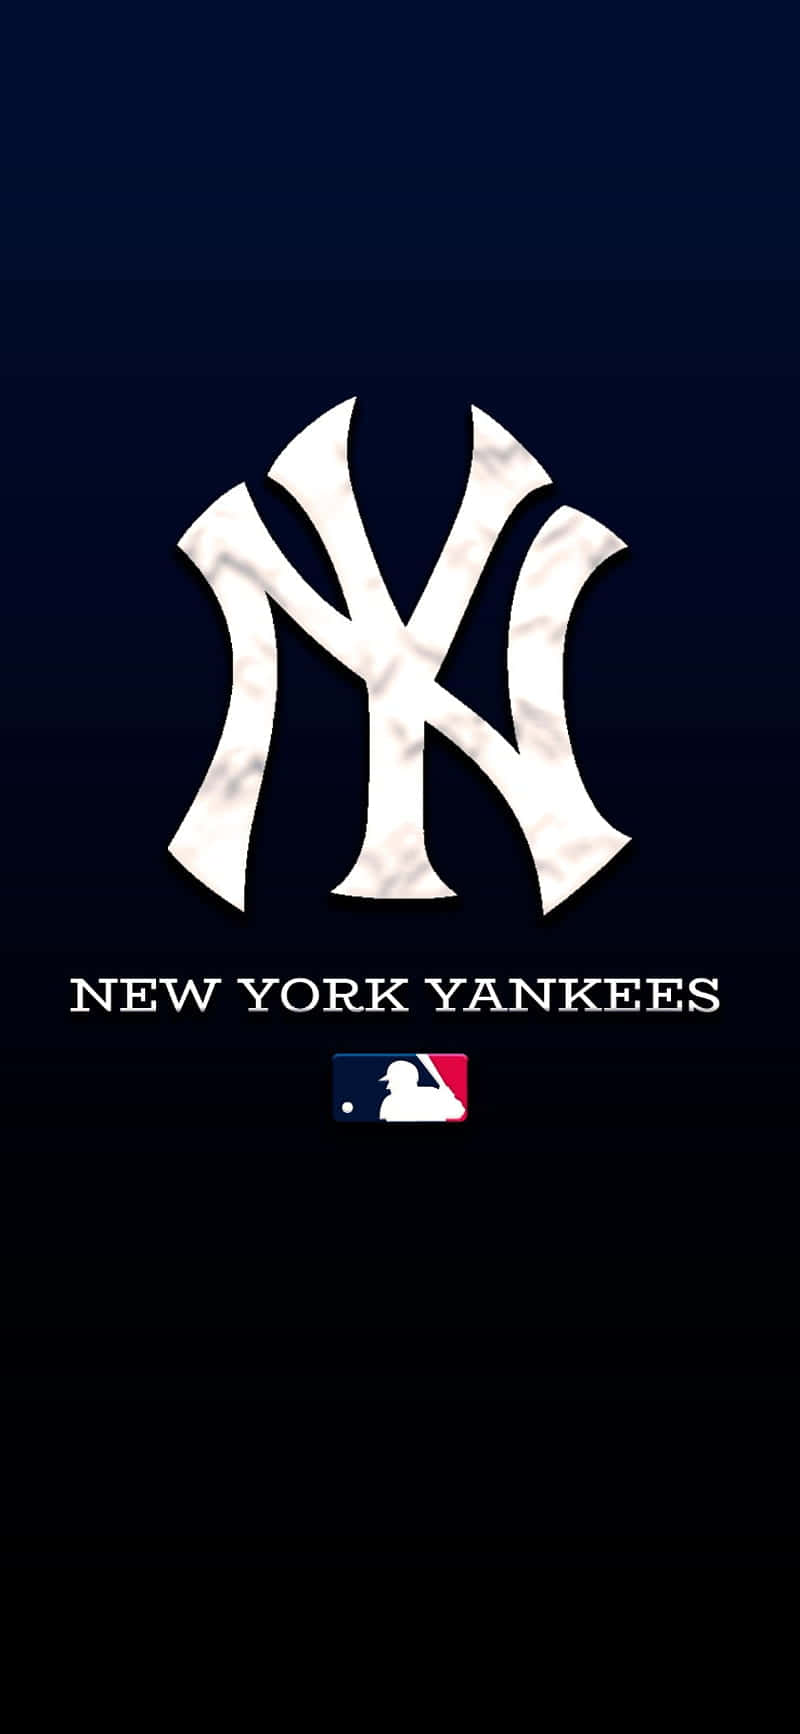 Tag Din Ny Yankees Stolthed Med En Officiel Iphone-sag! Wallpaper